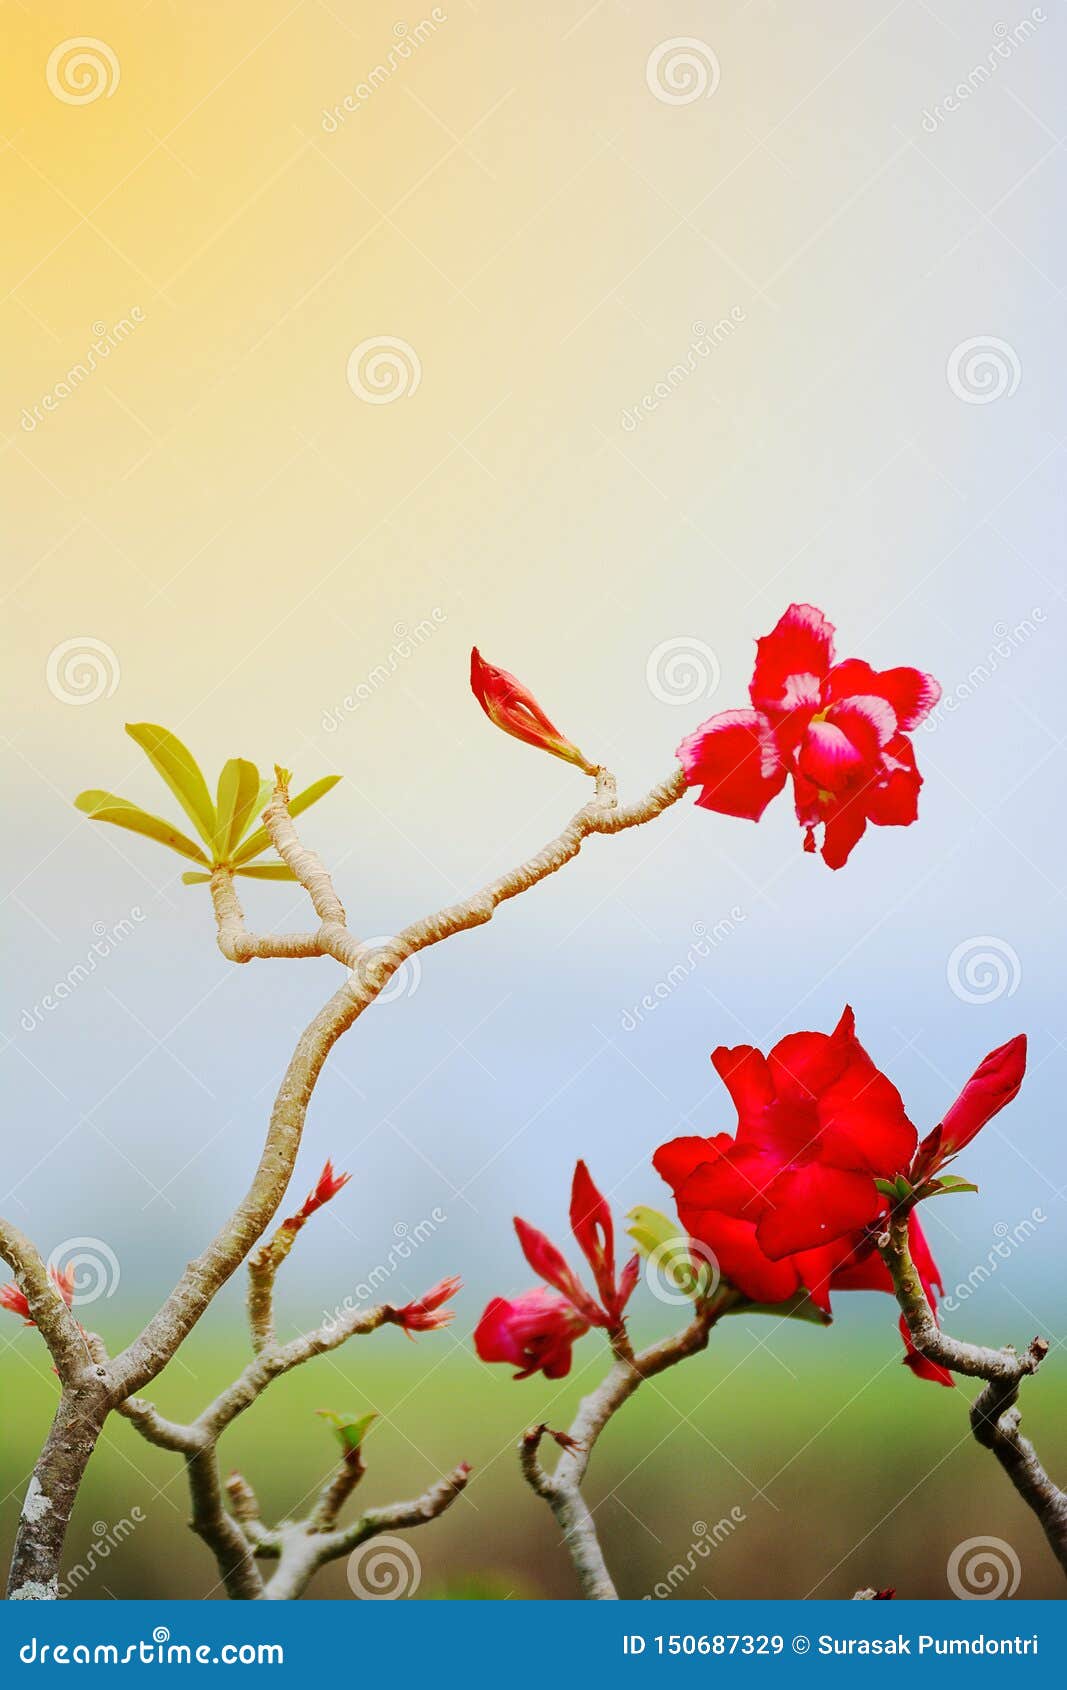 Hoa bignonia rực rỡ tràn đầy sức sống và sự thật sự được tô điểm một cách hoàn hảo trong hình ảnh này. Hãy cùng khám phá sự độc đáo của hoa này qua những điểm nhấn tuyệt vời trong bức hình.